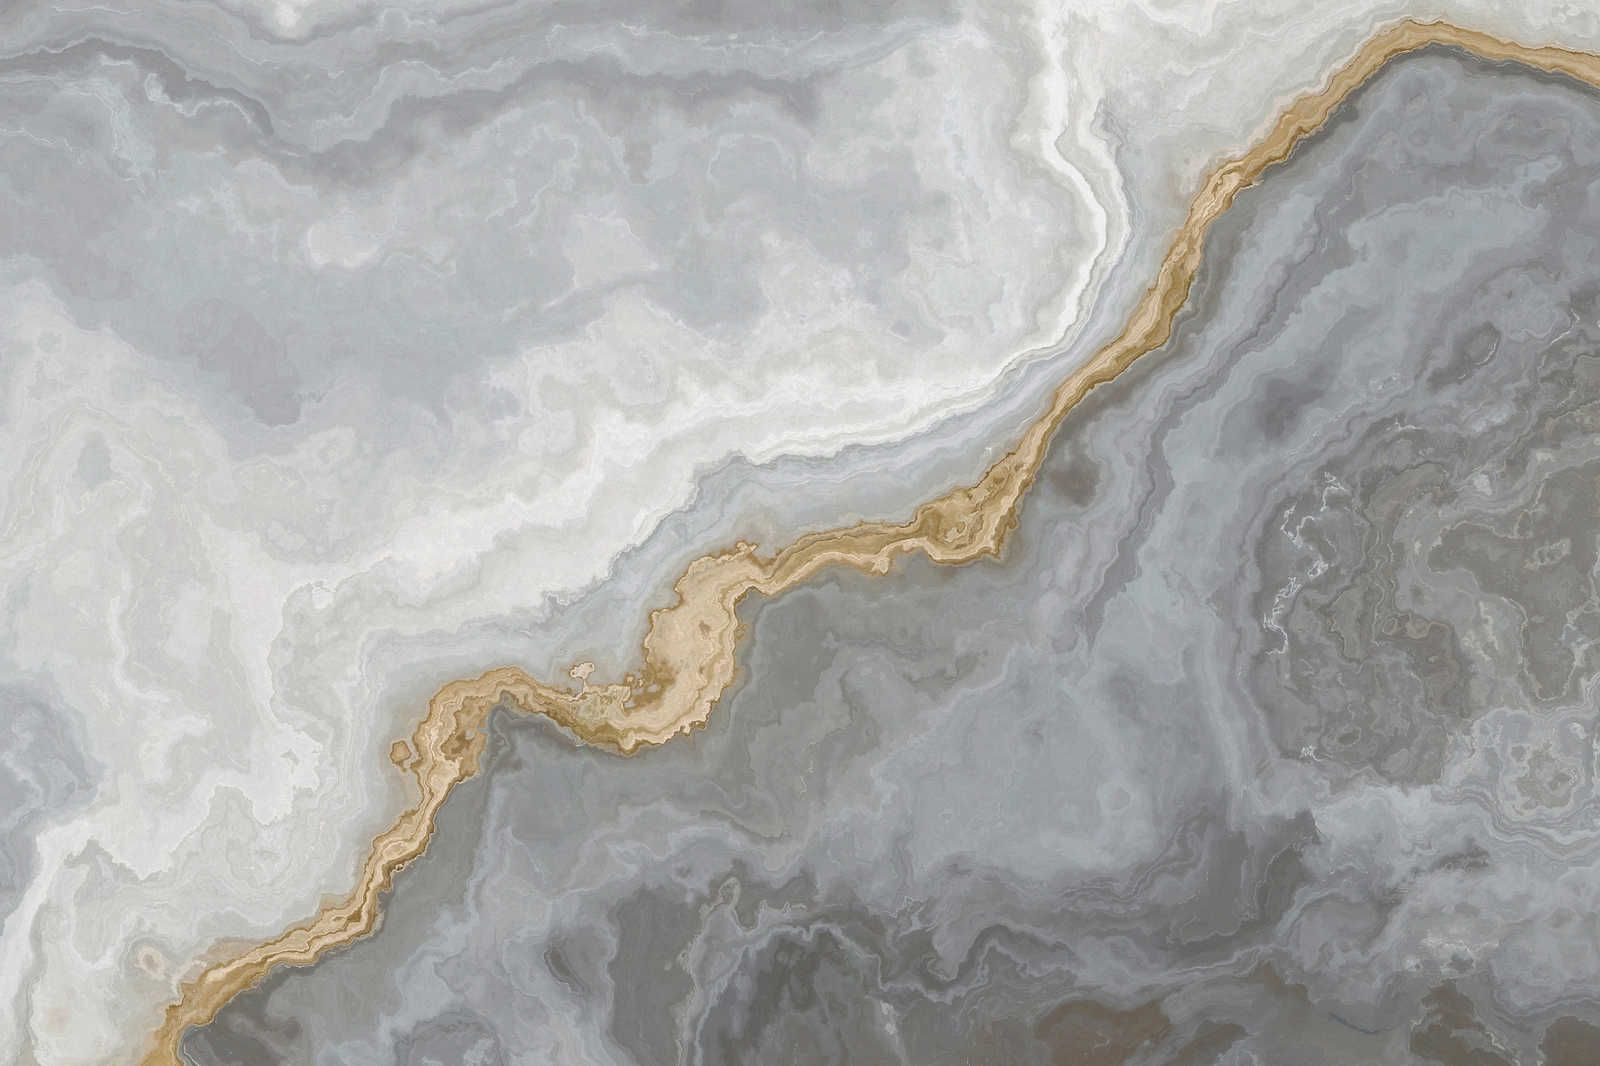             Quadro su tela effetto pietra di quarzo con marmorizzazione - 0,90 m x 0,60 m
        